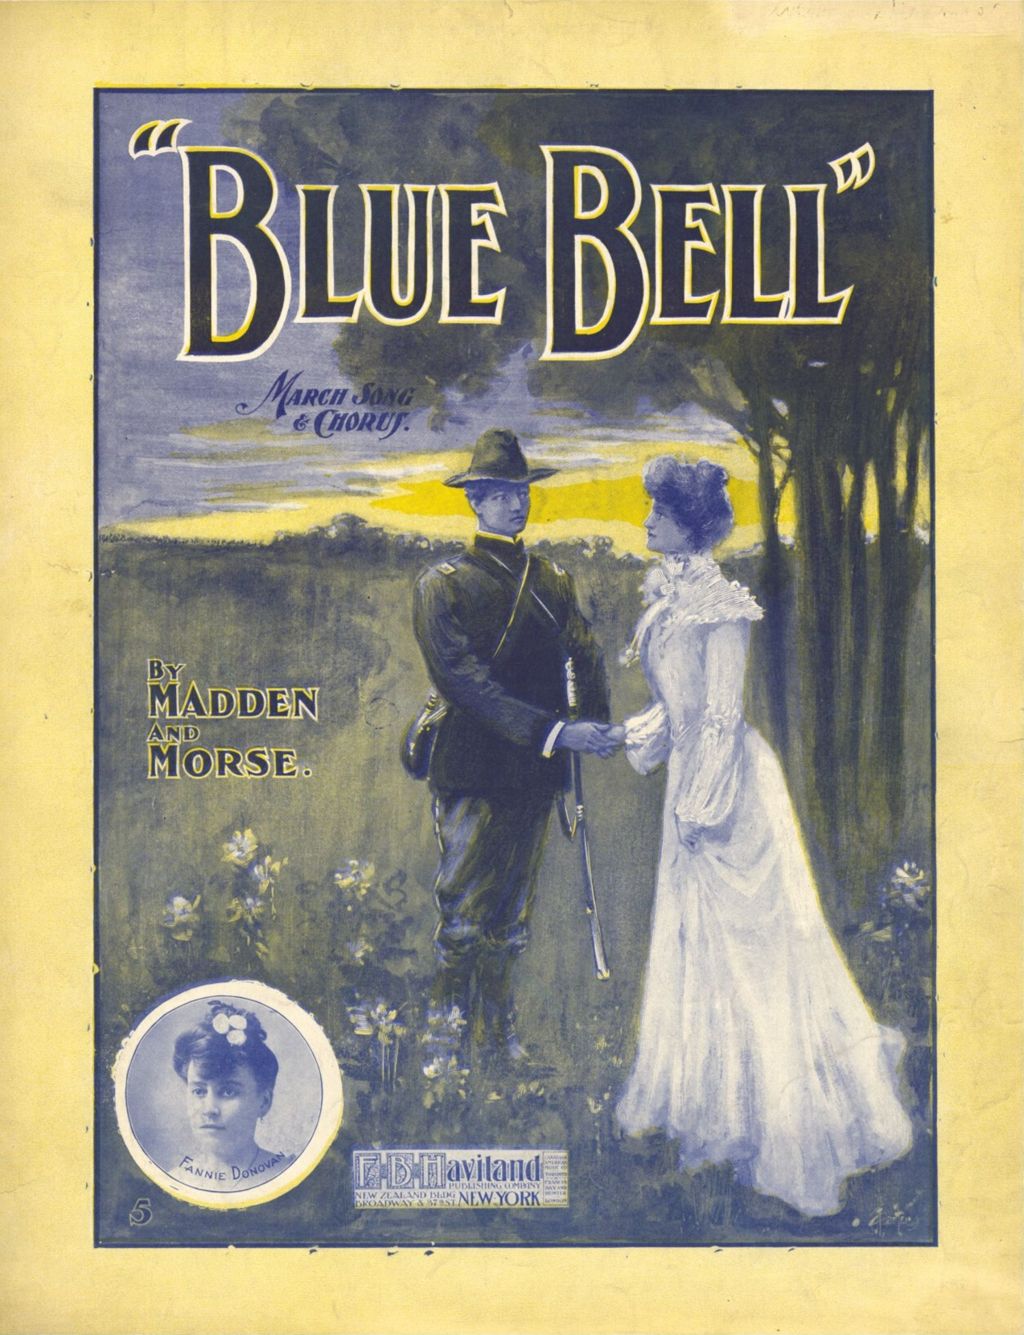 Miniature of Blue Bell